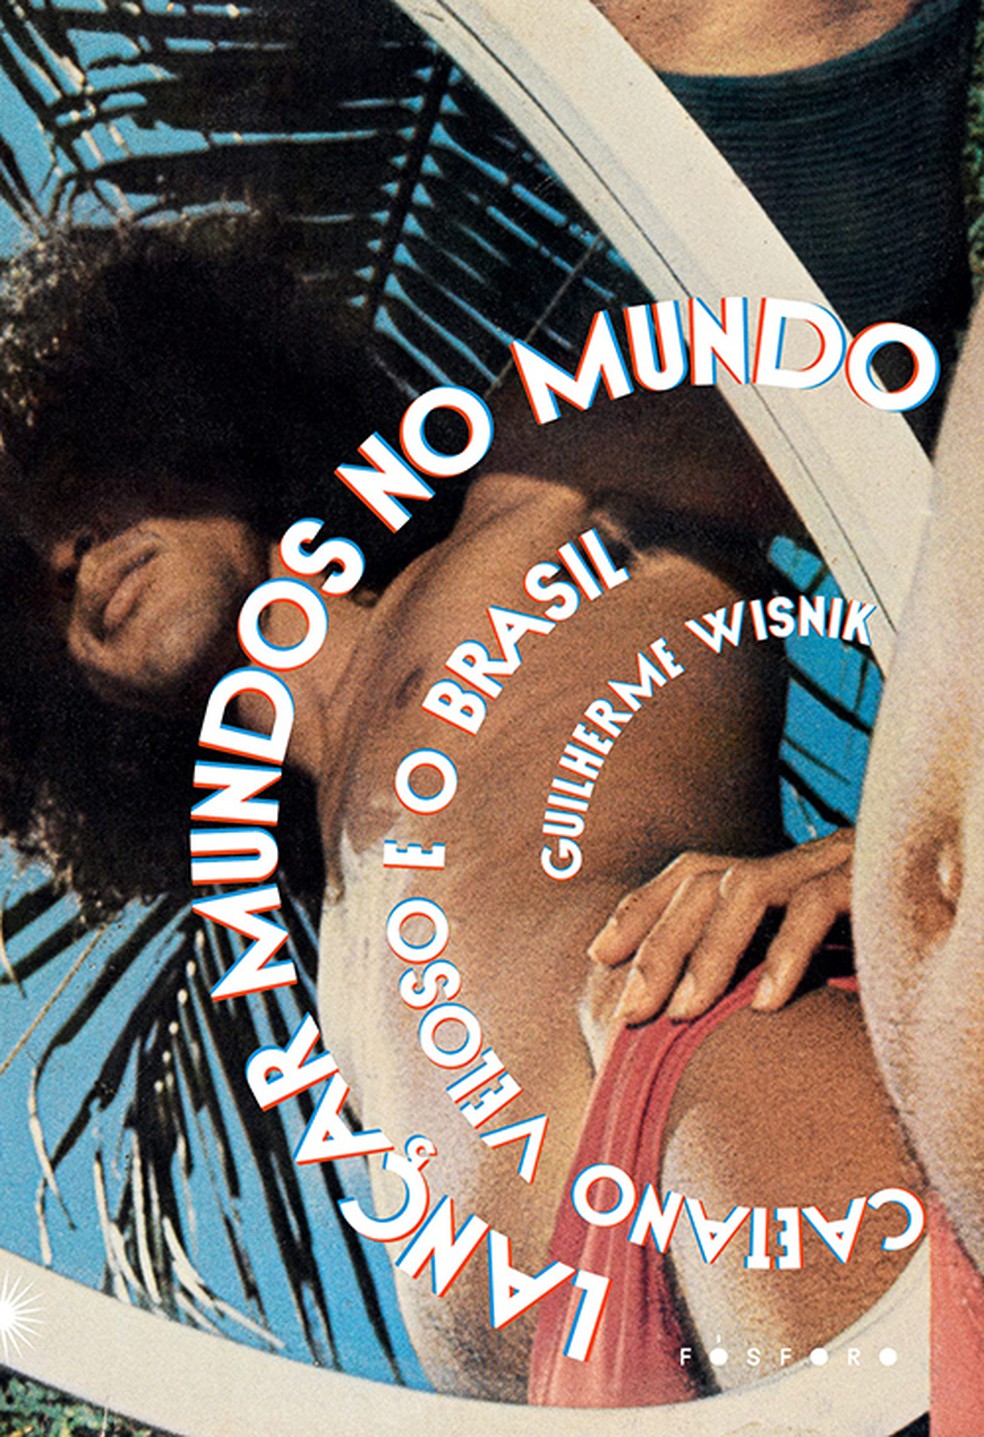 Capa do livro 'Lançar Mundos no Mundo – Caetano Veloso e o Brasil'  — Foto: Divulgação